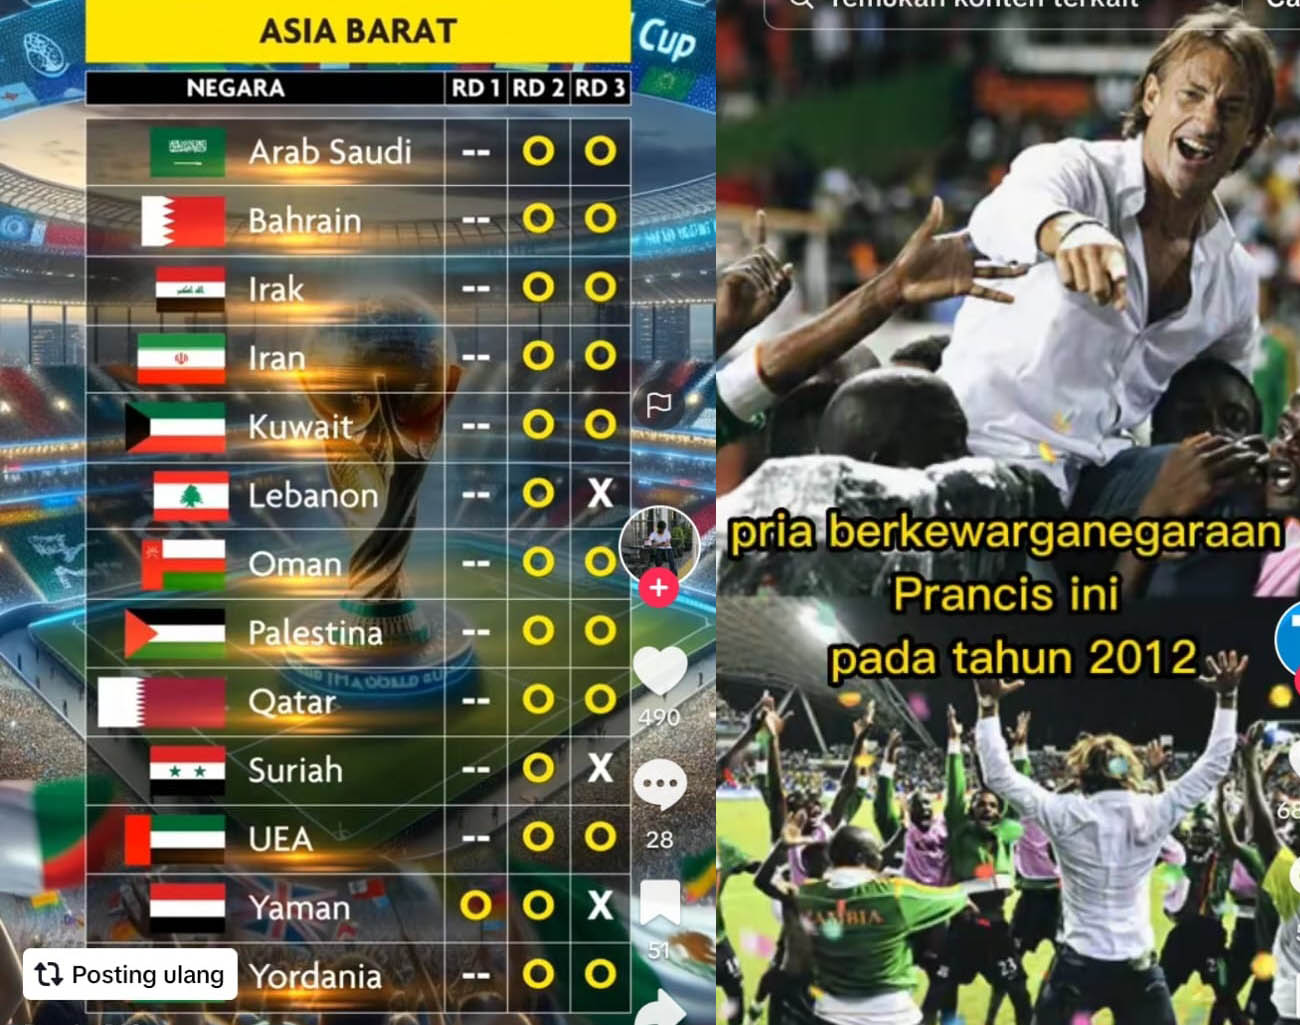 Inilah 13 Negara Asia Barat, Lolos Ronde 3, Erick Thohir: Lawan Indonesia Berat, Kualifikasi Piala Dunia 2026